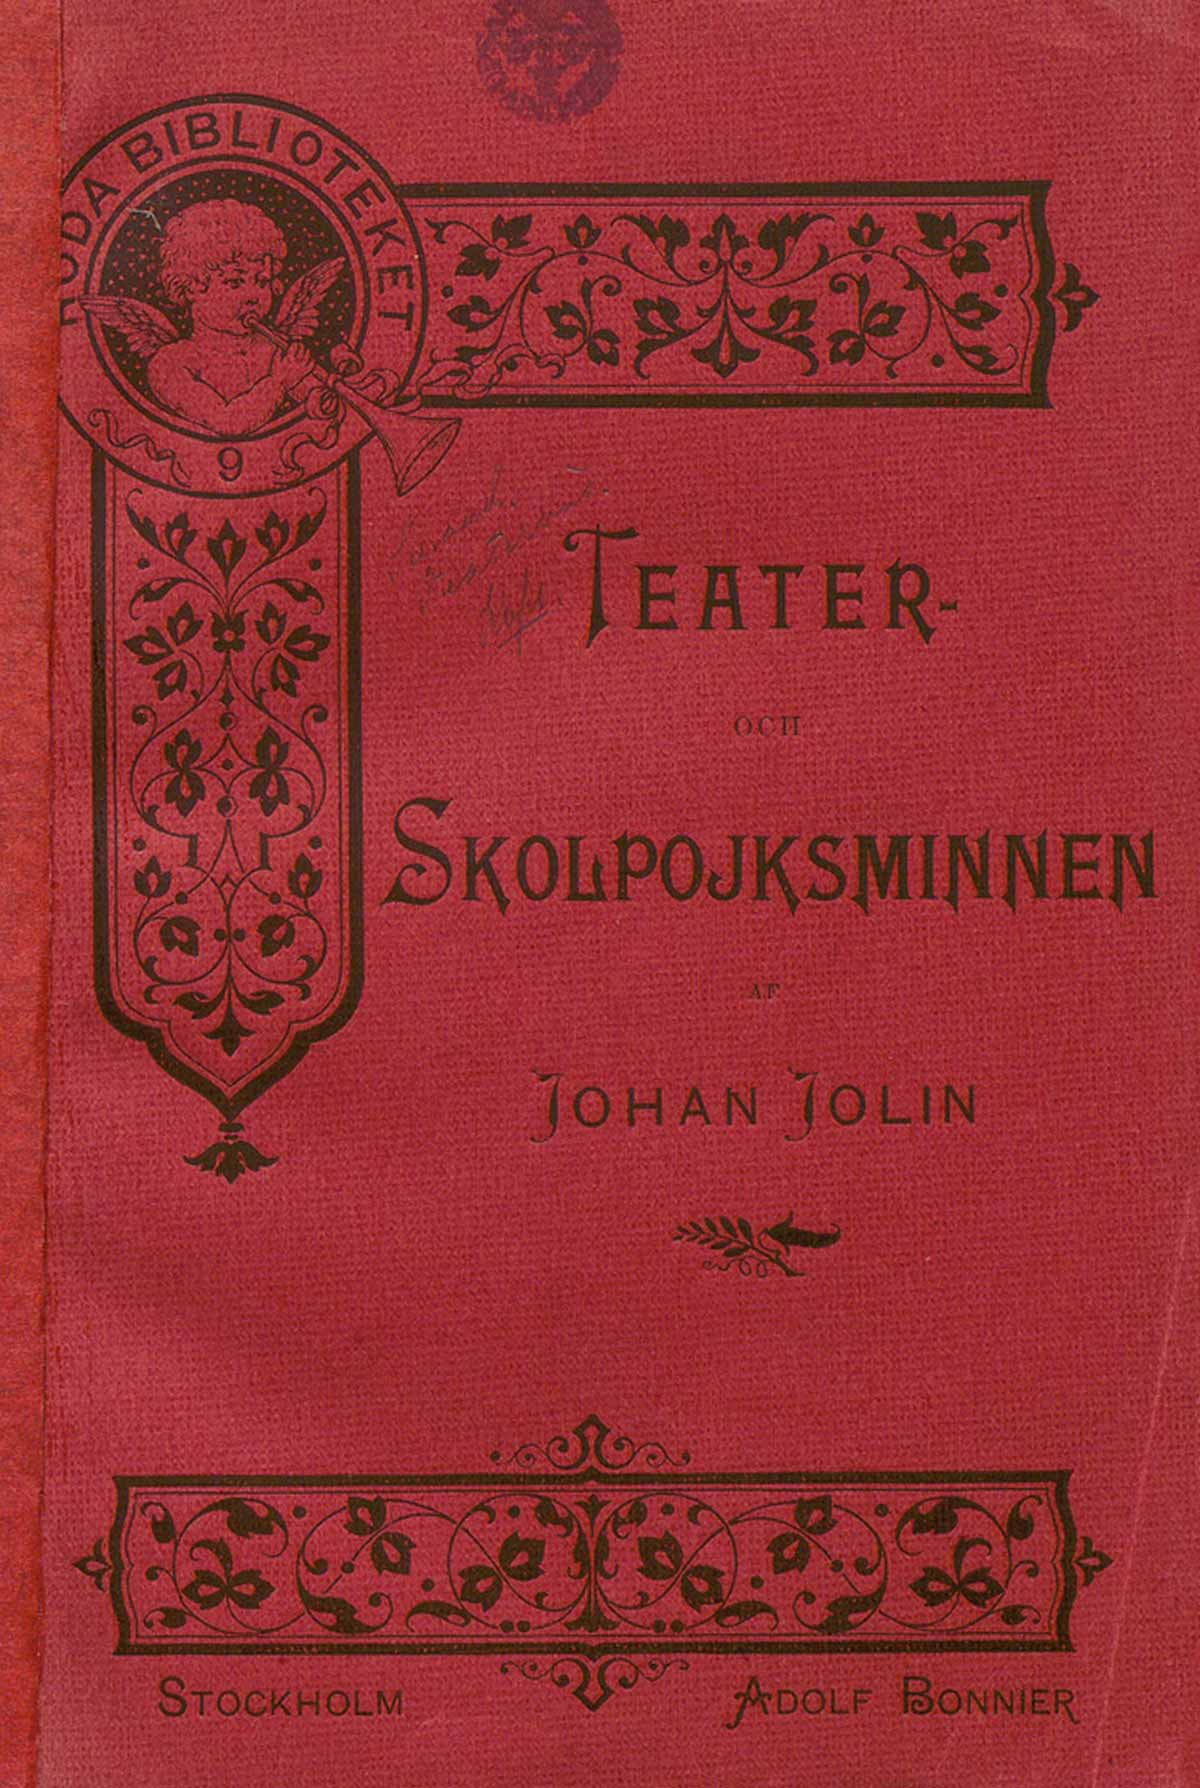 Johan Jolin: Teater- och skolpojksminnen